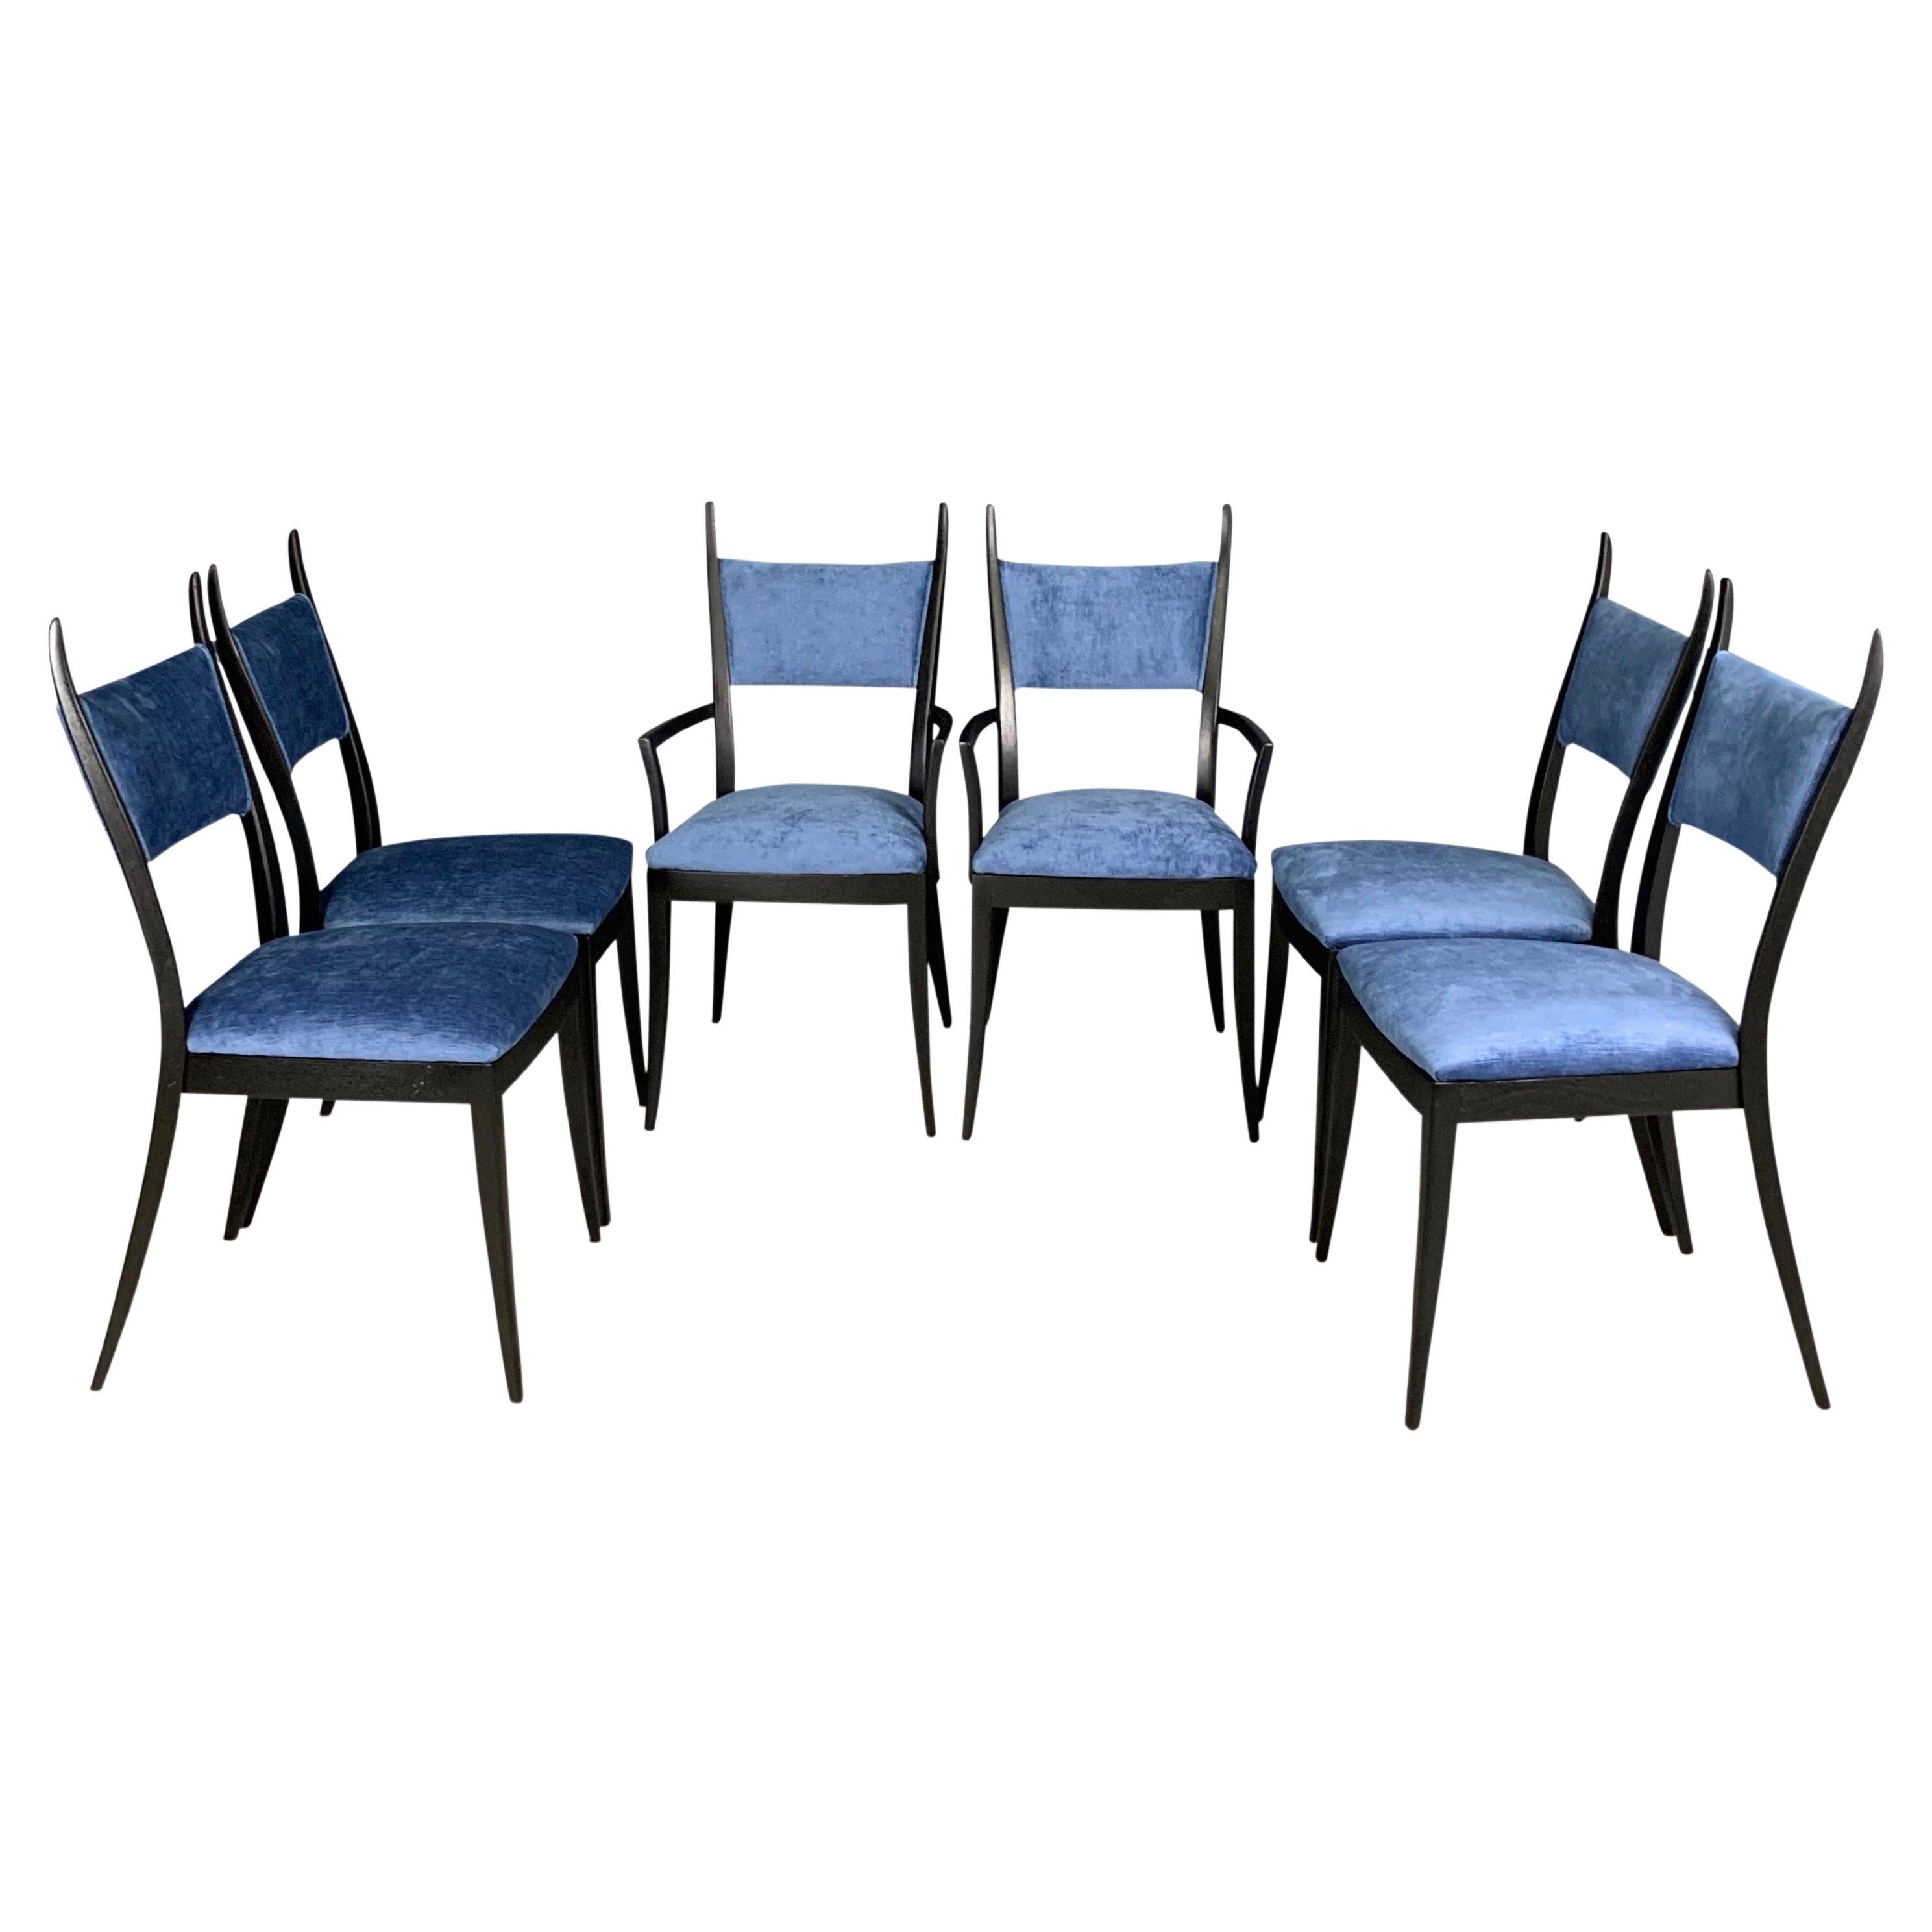 Harvey Probber 1048 "Gazelle" Ebonized Dining Chairs Set of Six Mid Century